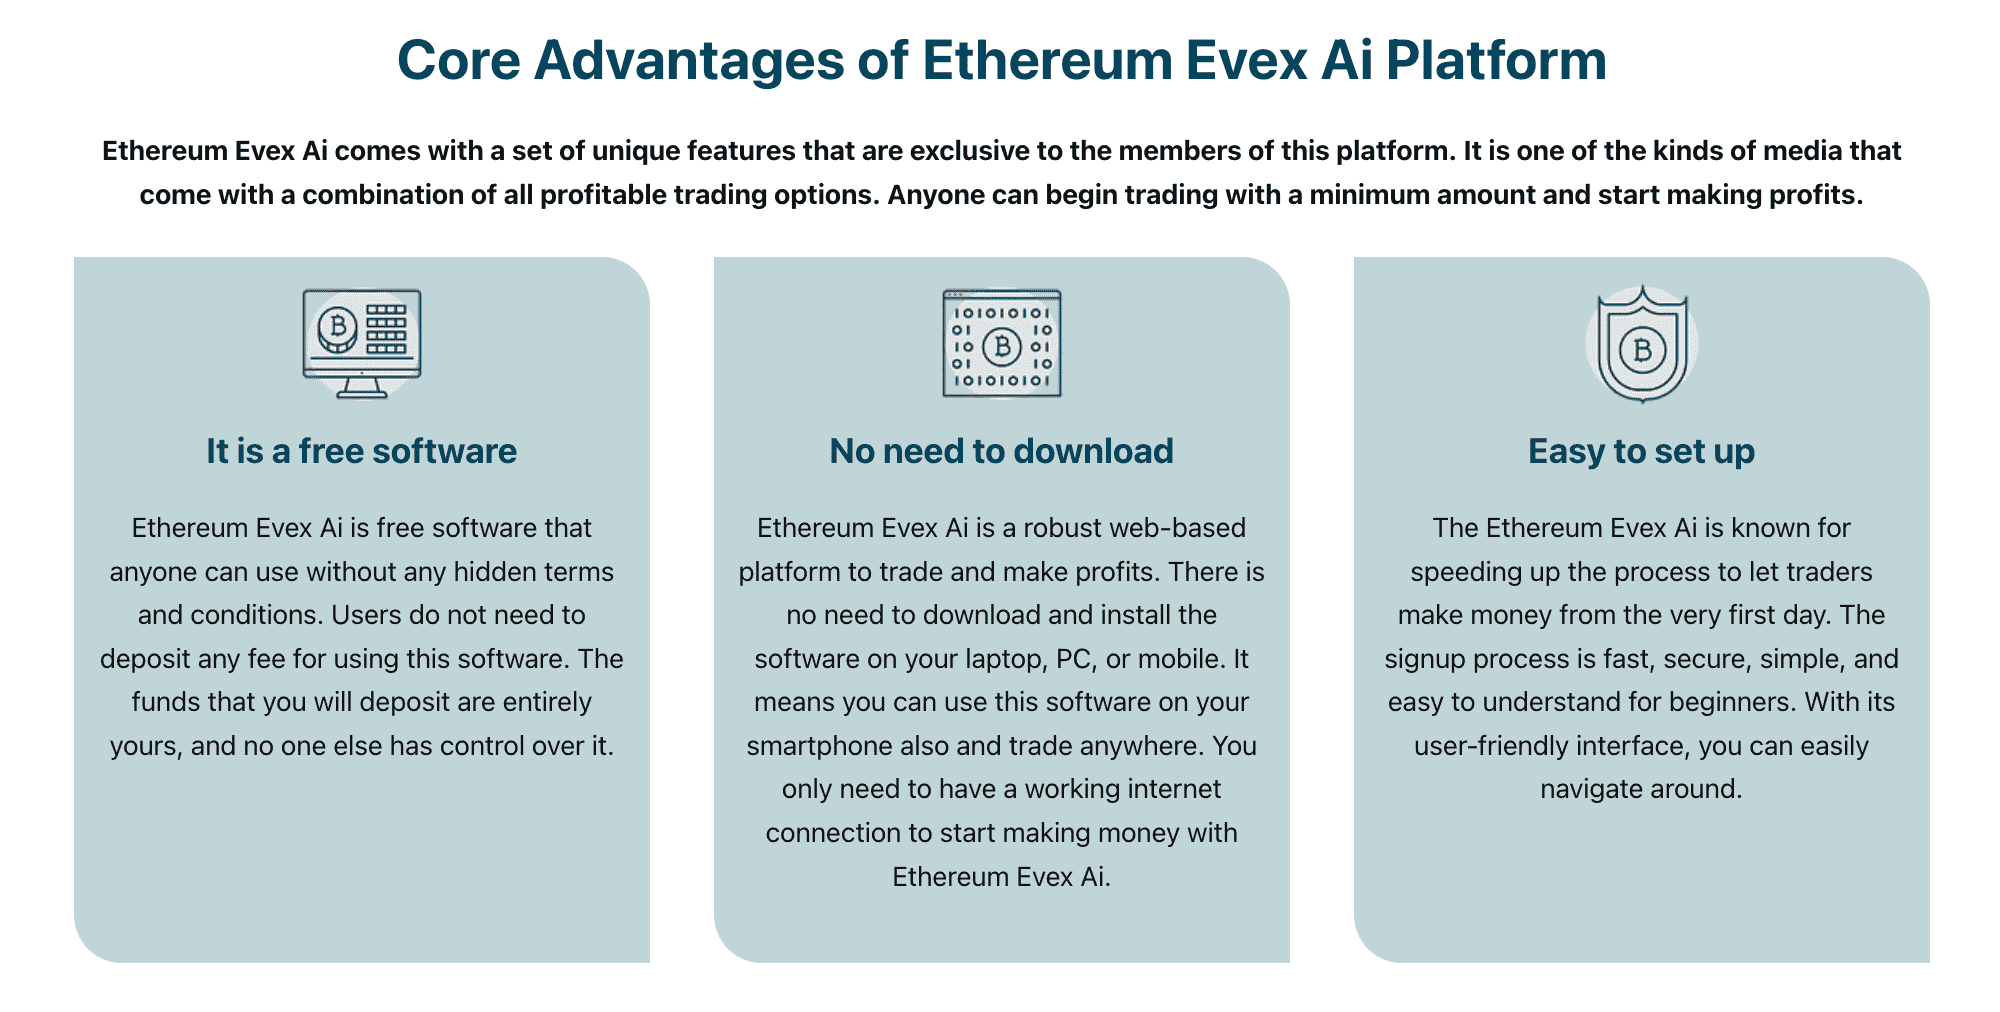 Avantajele principale ale platformei Ethereum Evex Ai  